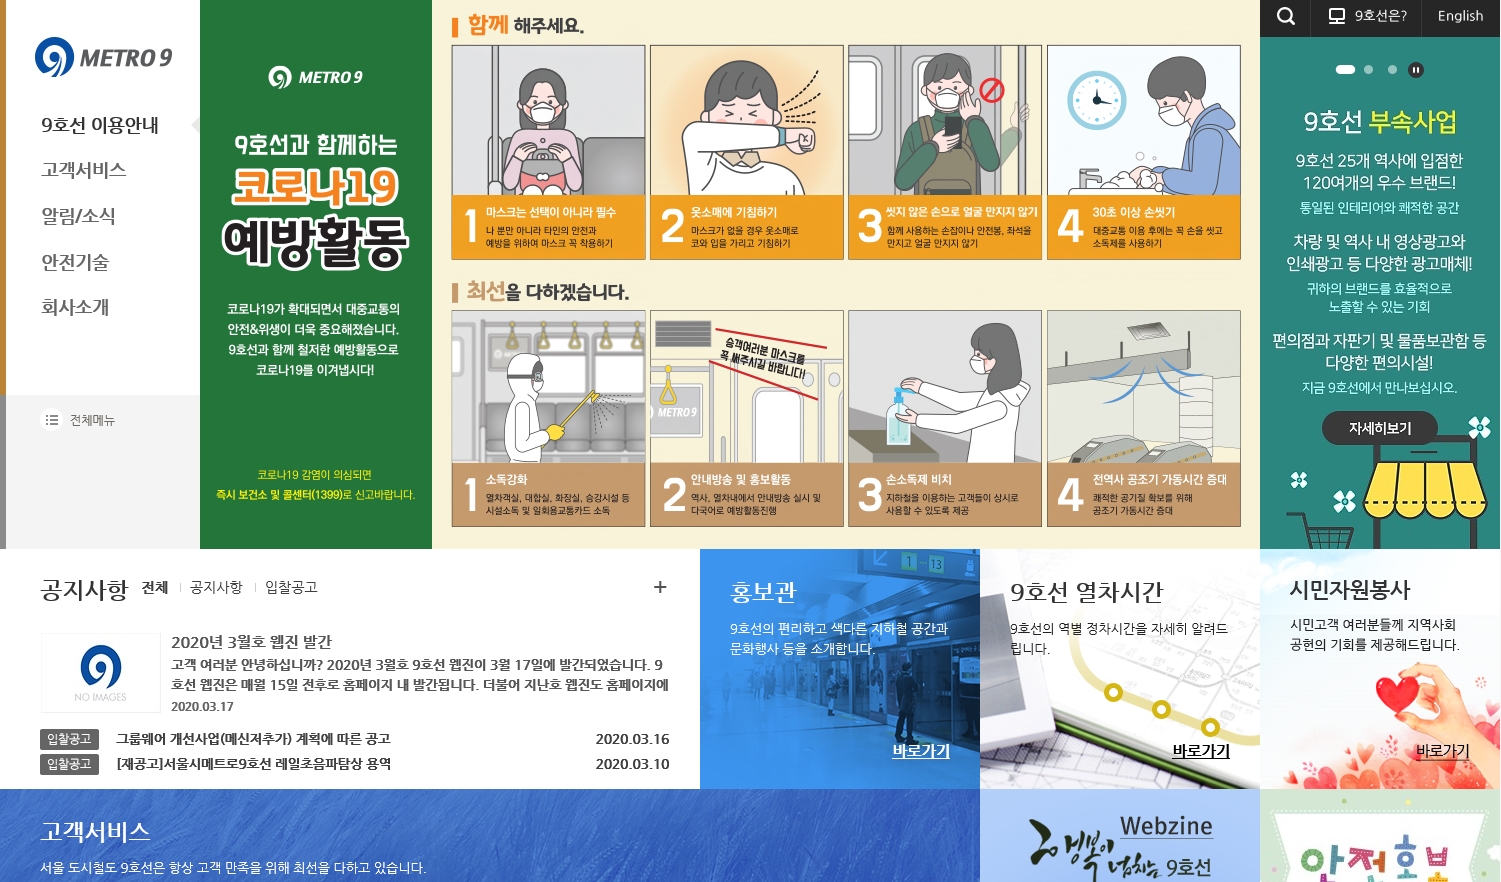 서울시 메트로9호선 대표 홈페이지 스크릿샷